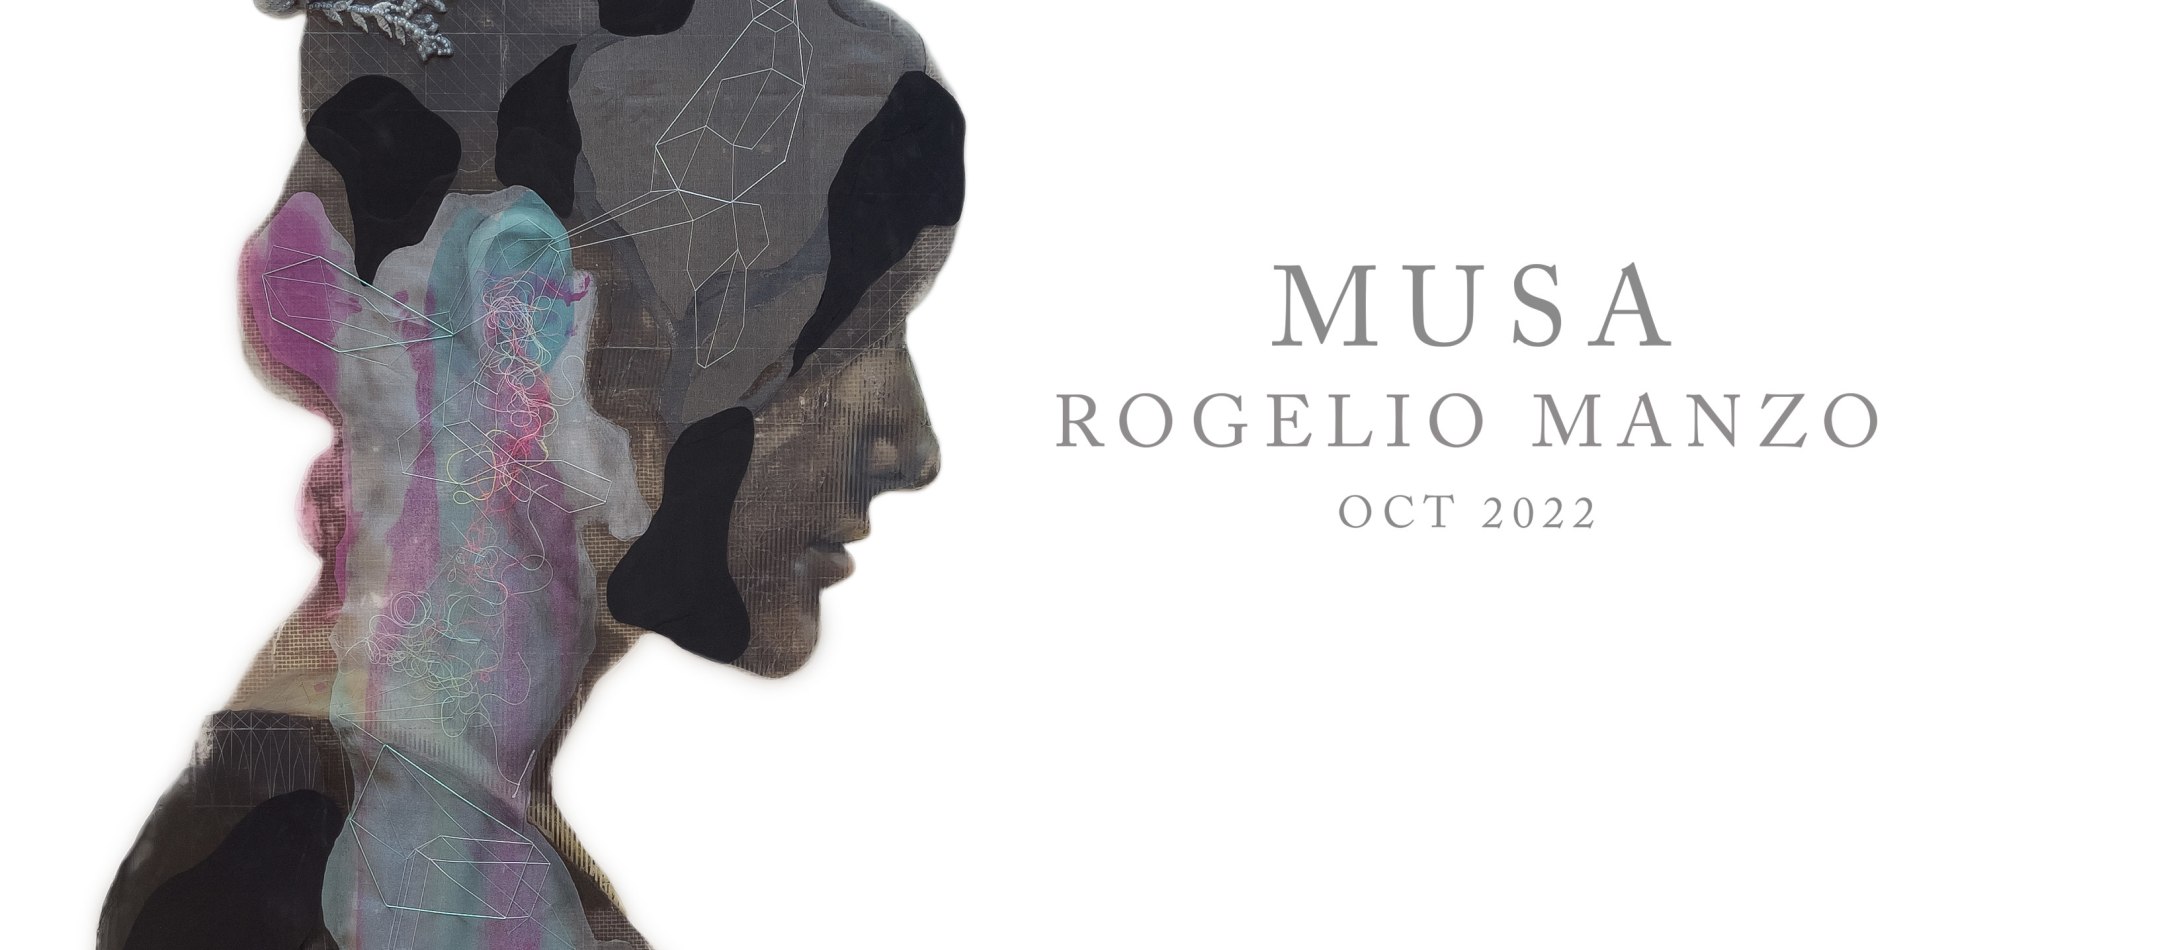 Musa | Rogelio Manzo - Exhibition | GLR41 - Oct 2022